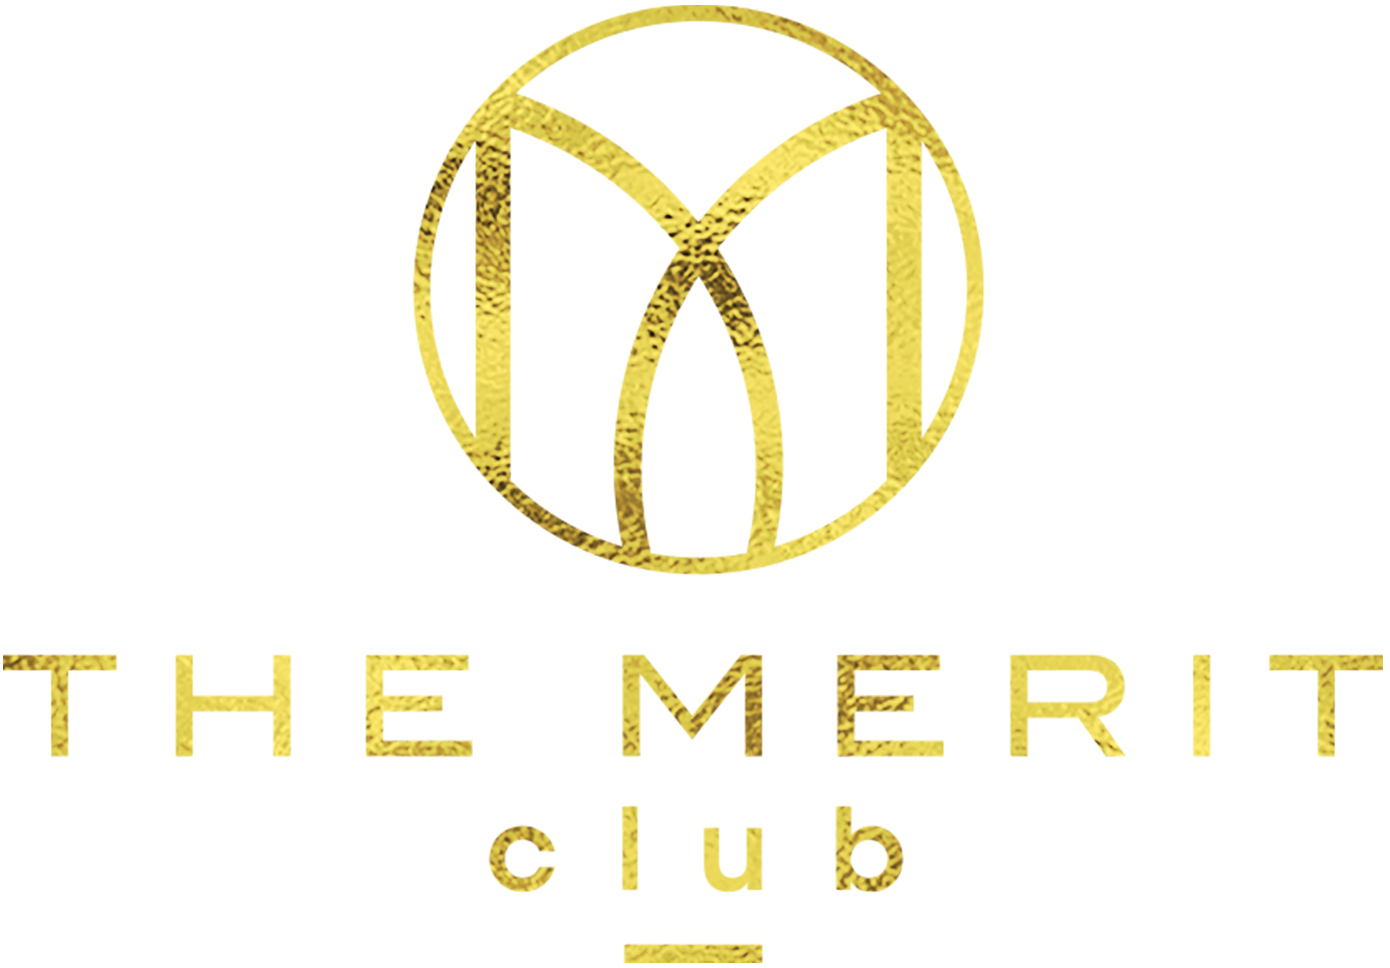 The Merit Club